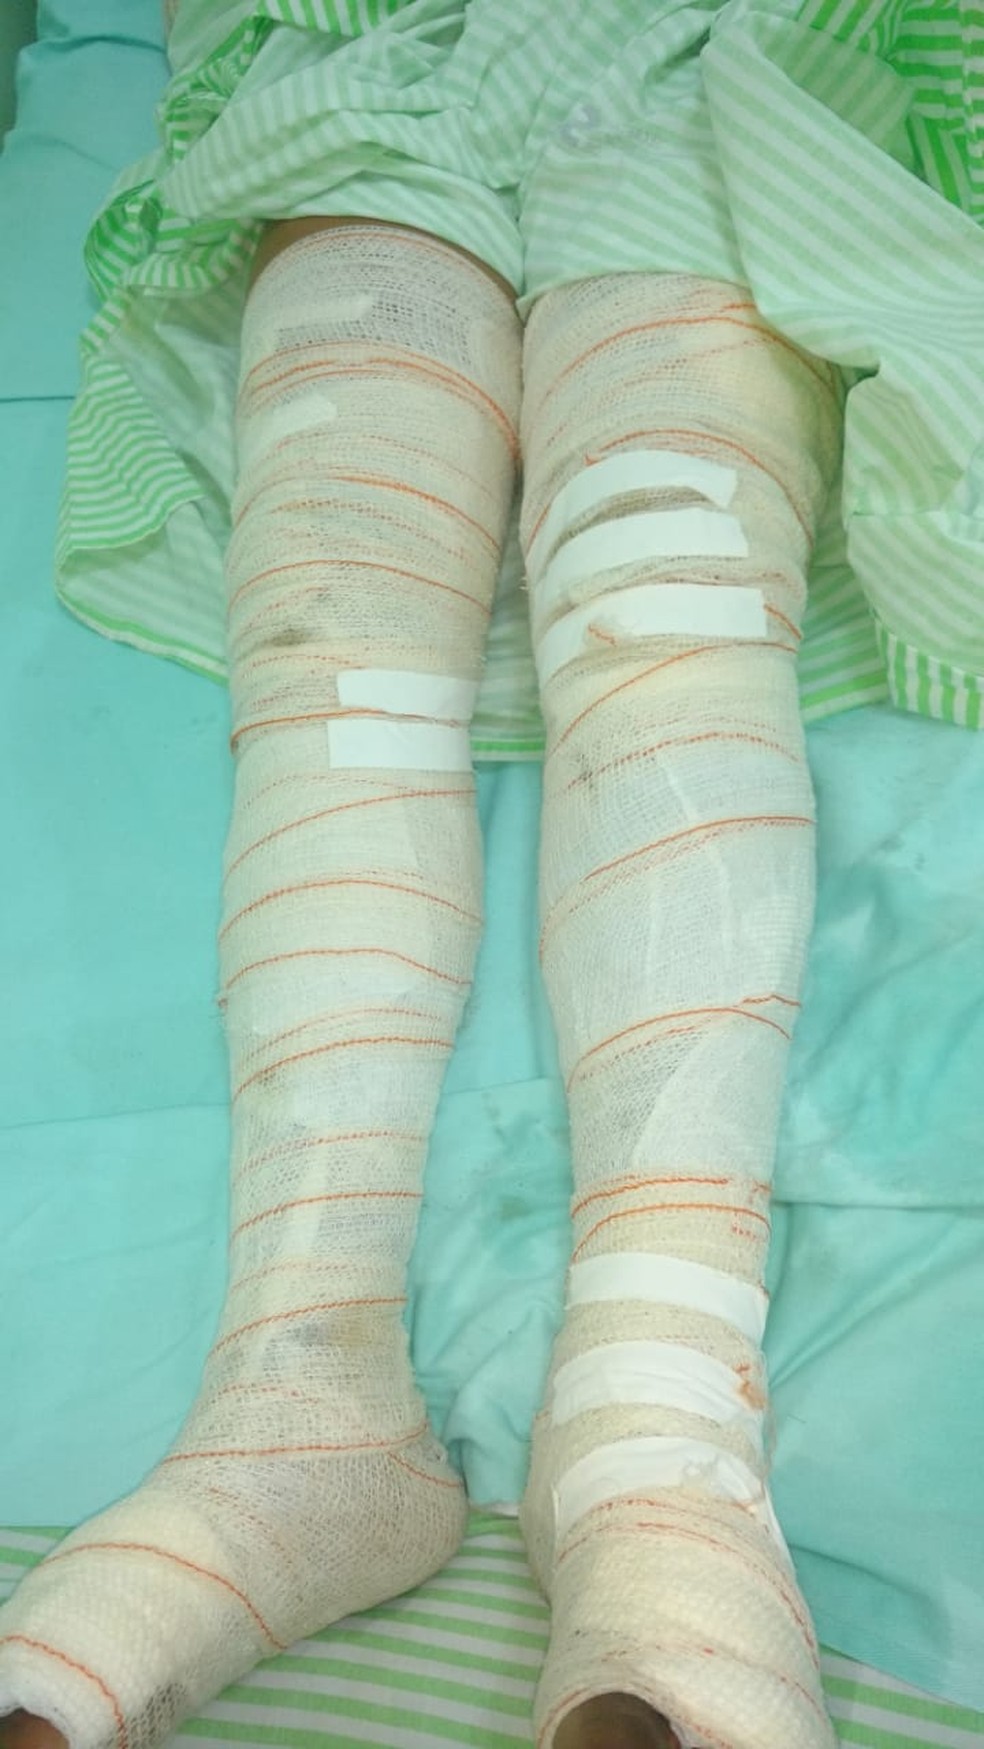 Mulher teve braços e pernas queimados e ficou 15 horas sofrendo com a dor dos ferimentos, impedida pelo marido de pedir ajuda. — Foto: Polícia Civil de Água Clara/Divulgação